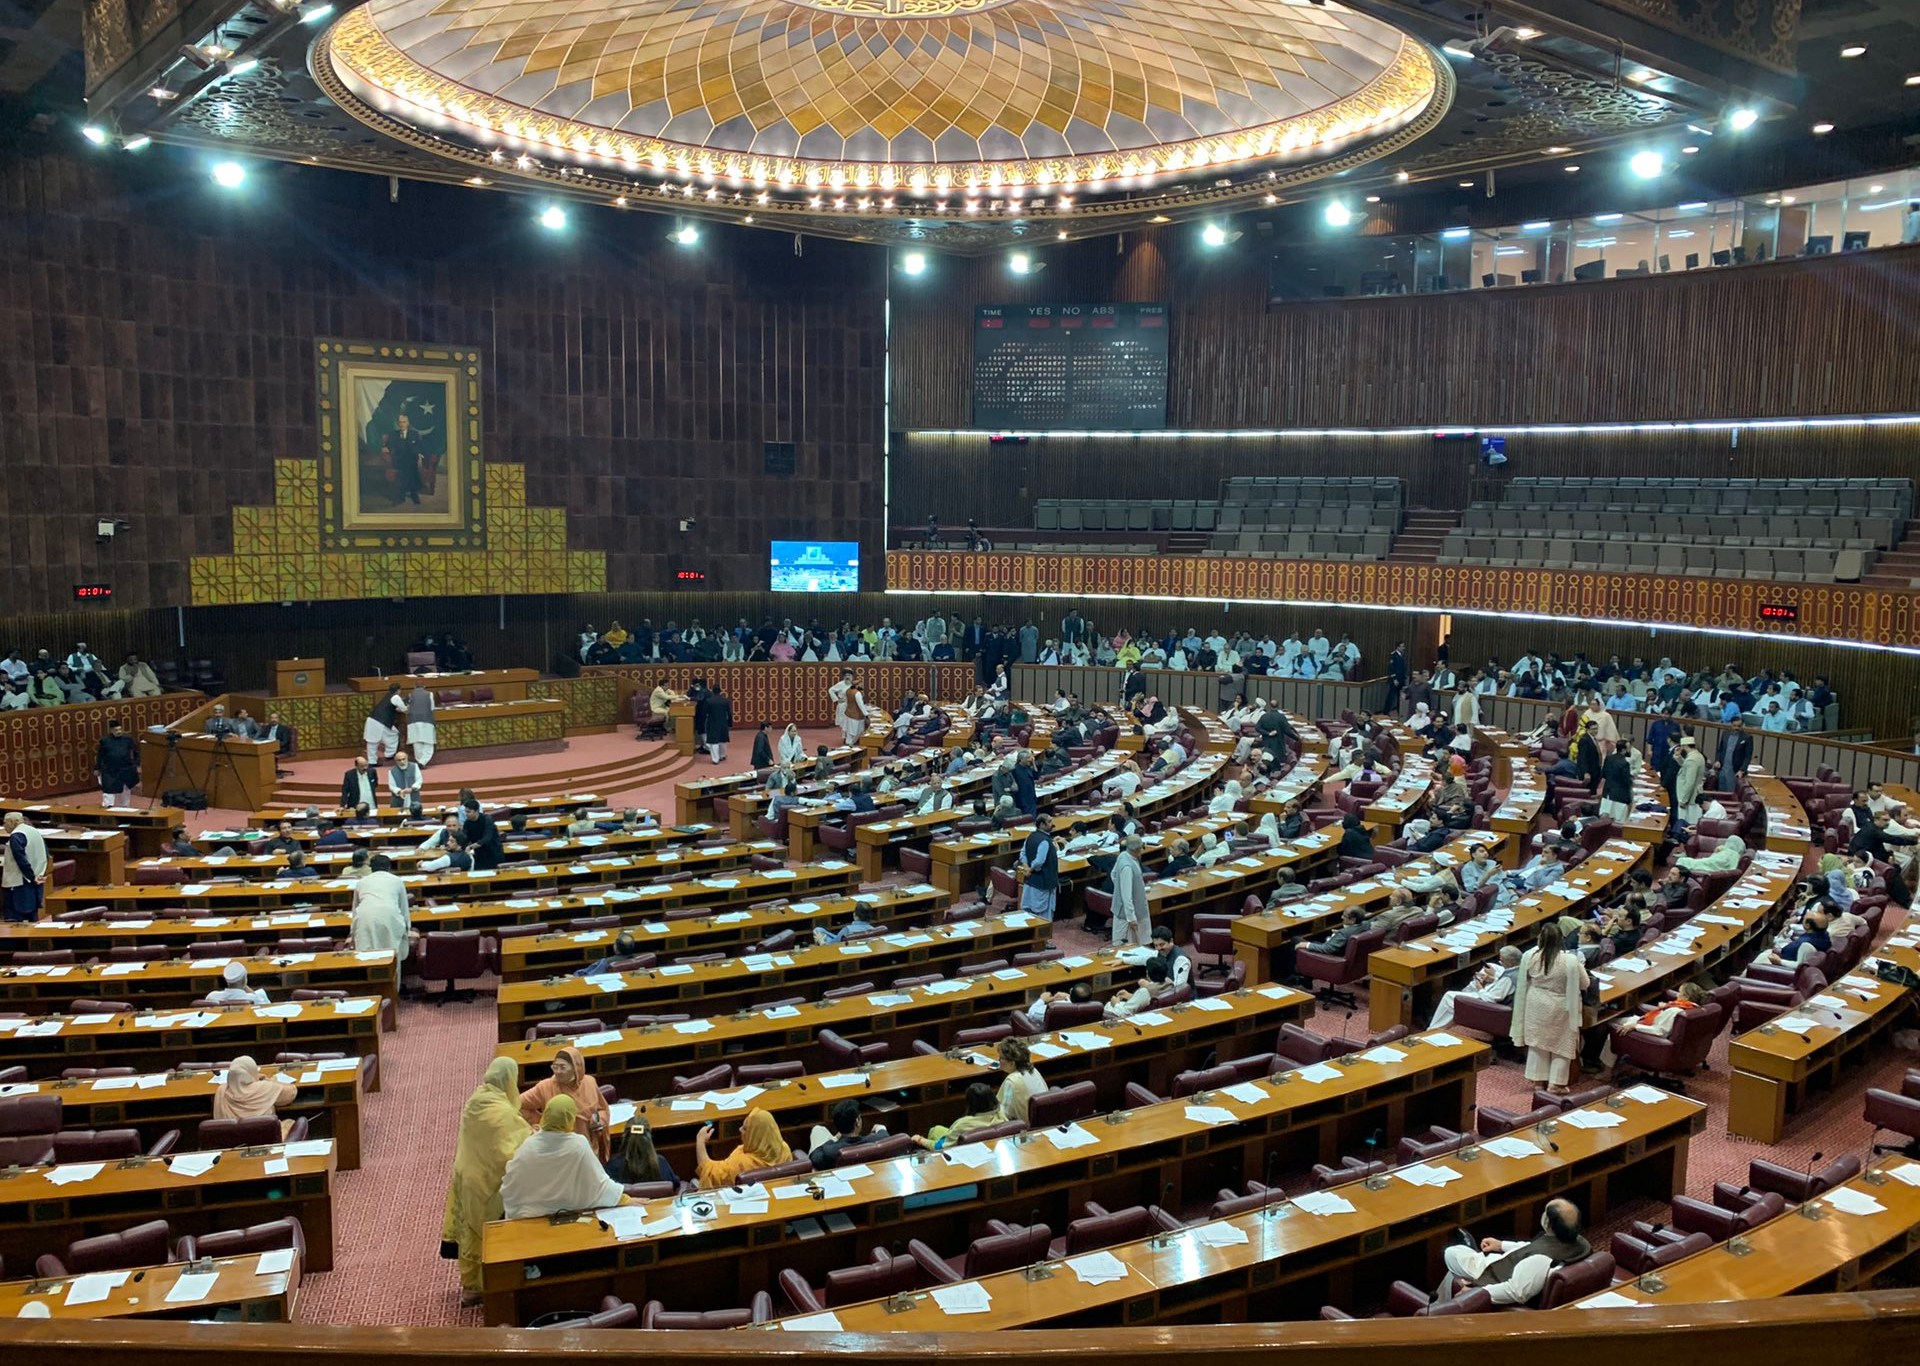 قانون الانتخابات والنظام الانتخابي في باكستان | الموسوعة – البوكس نيوز